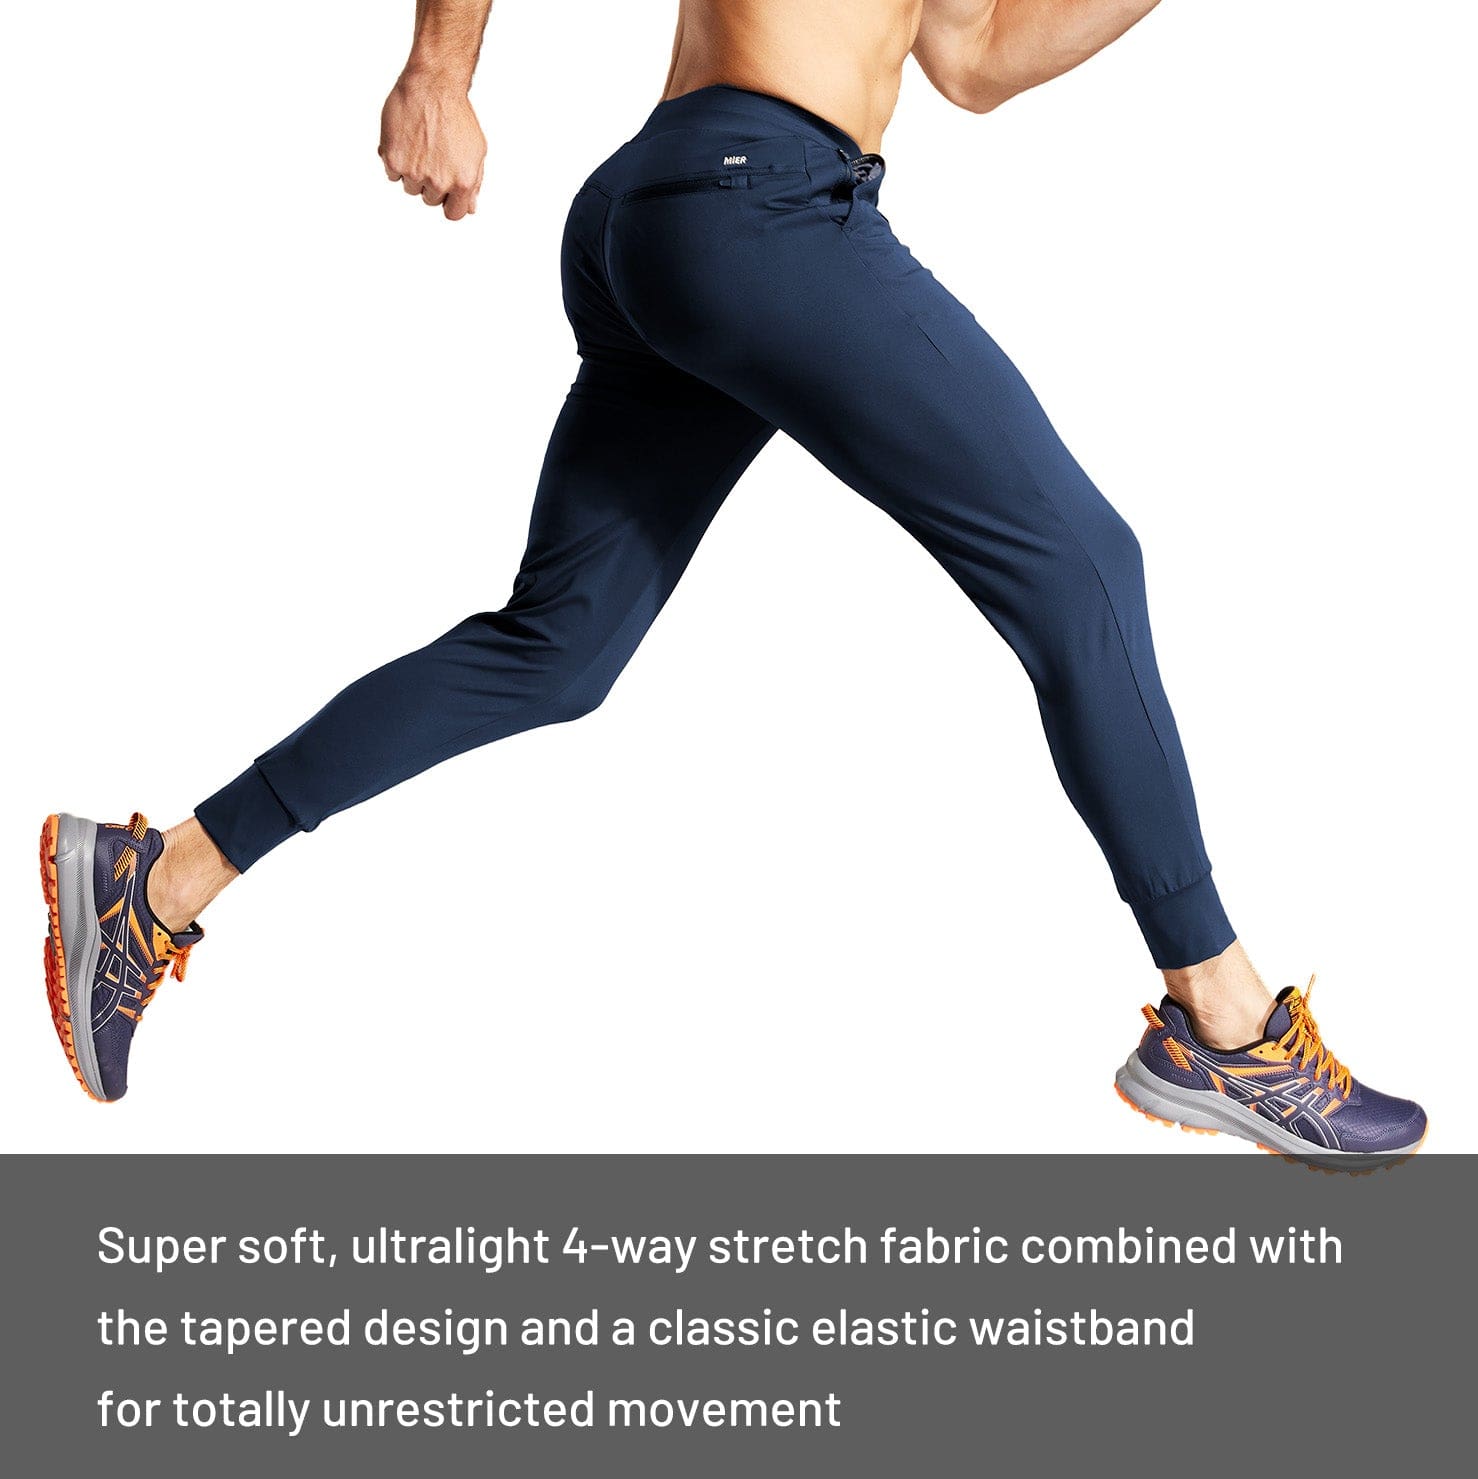 Men's Jogger Sweatpants Slim Fit Nylon Stretch Athletic Track Pants Men Train Pants MIER